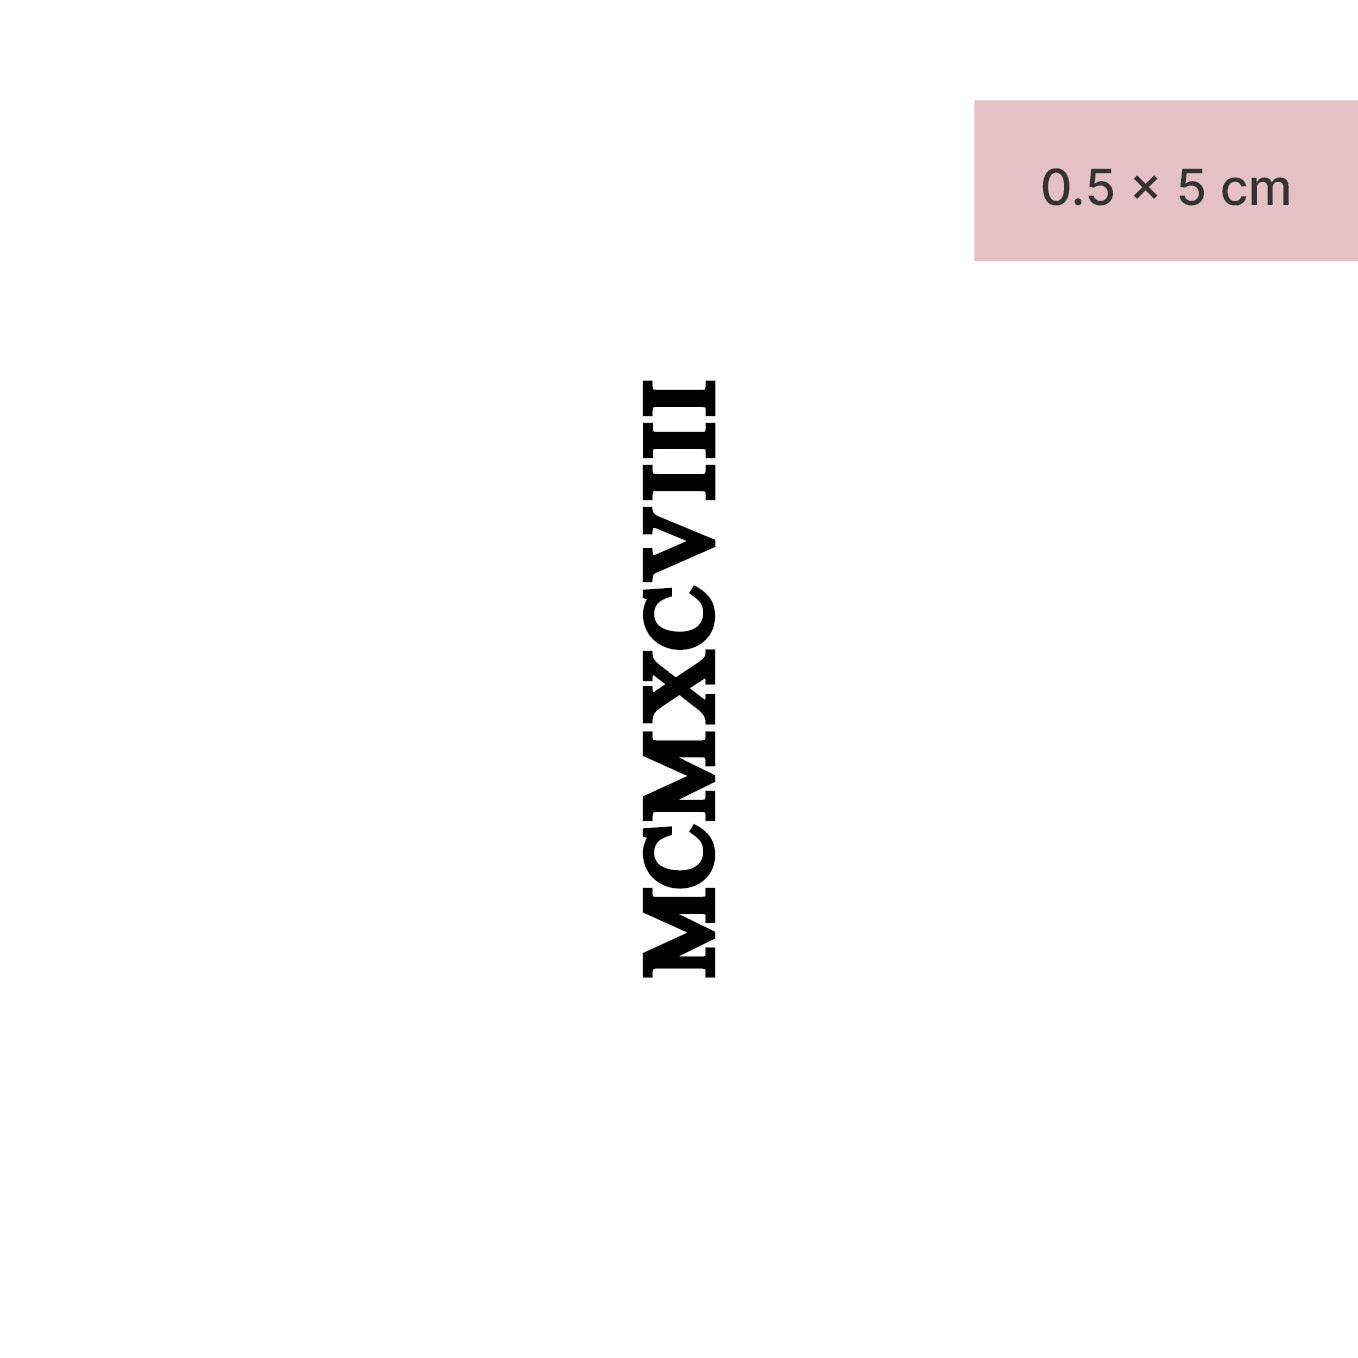 Zahlen Tattoo Römische Ziffer MCMXCVIII (1998) von minink, der Marke für temporäre Tattoos.